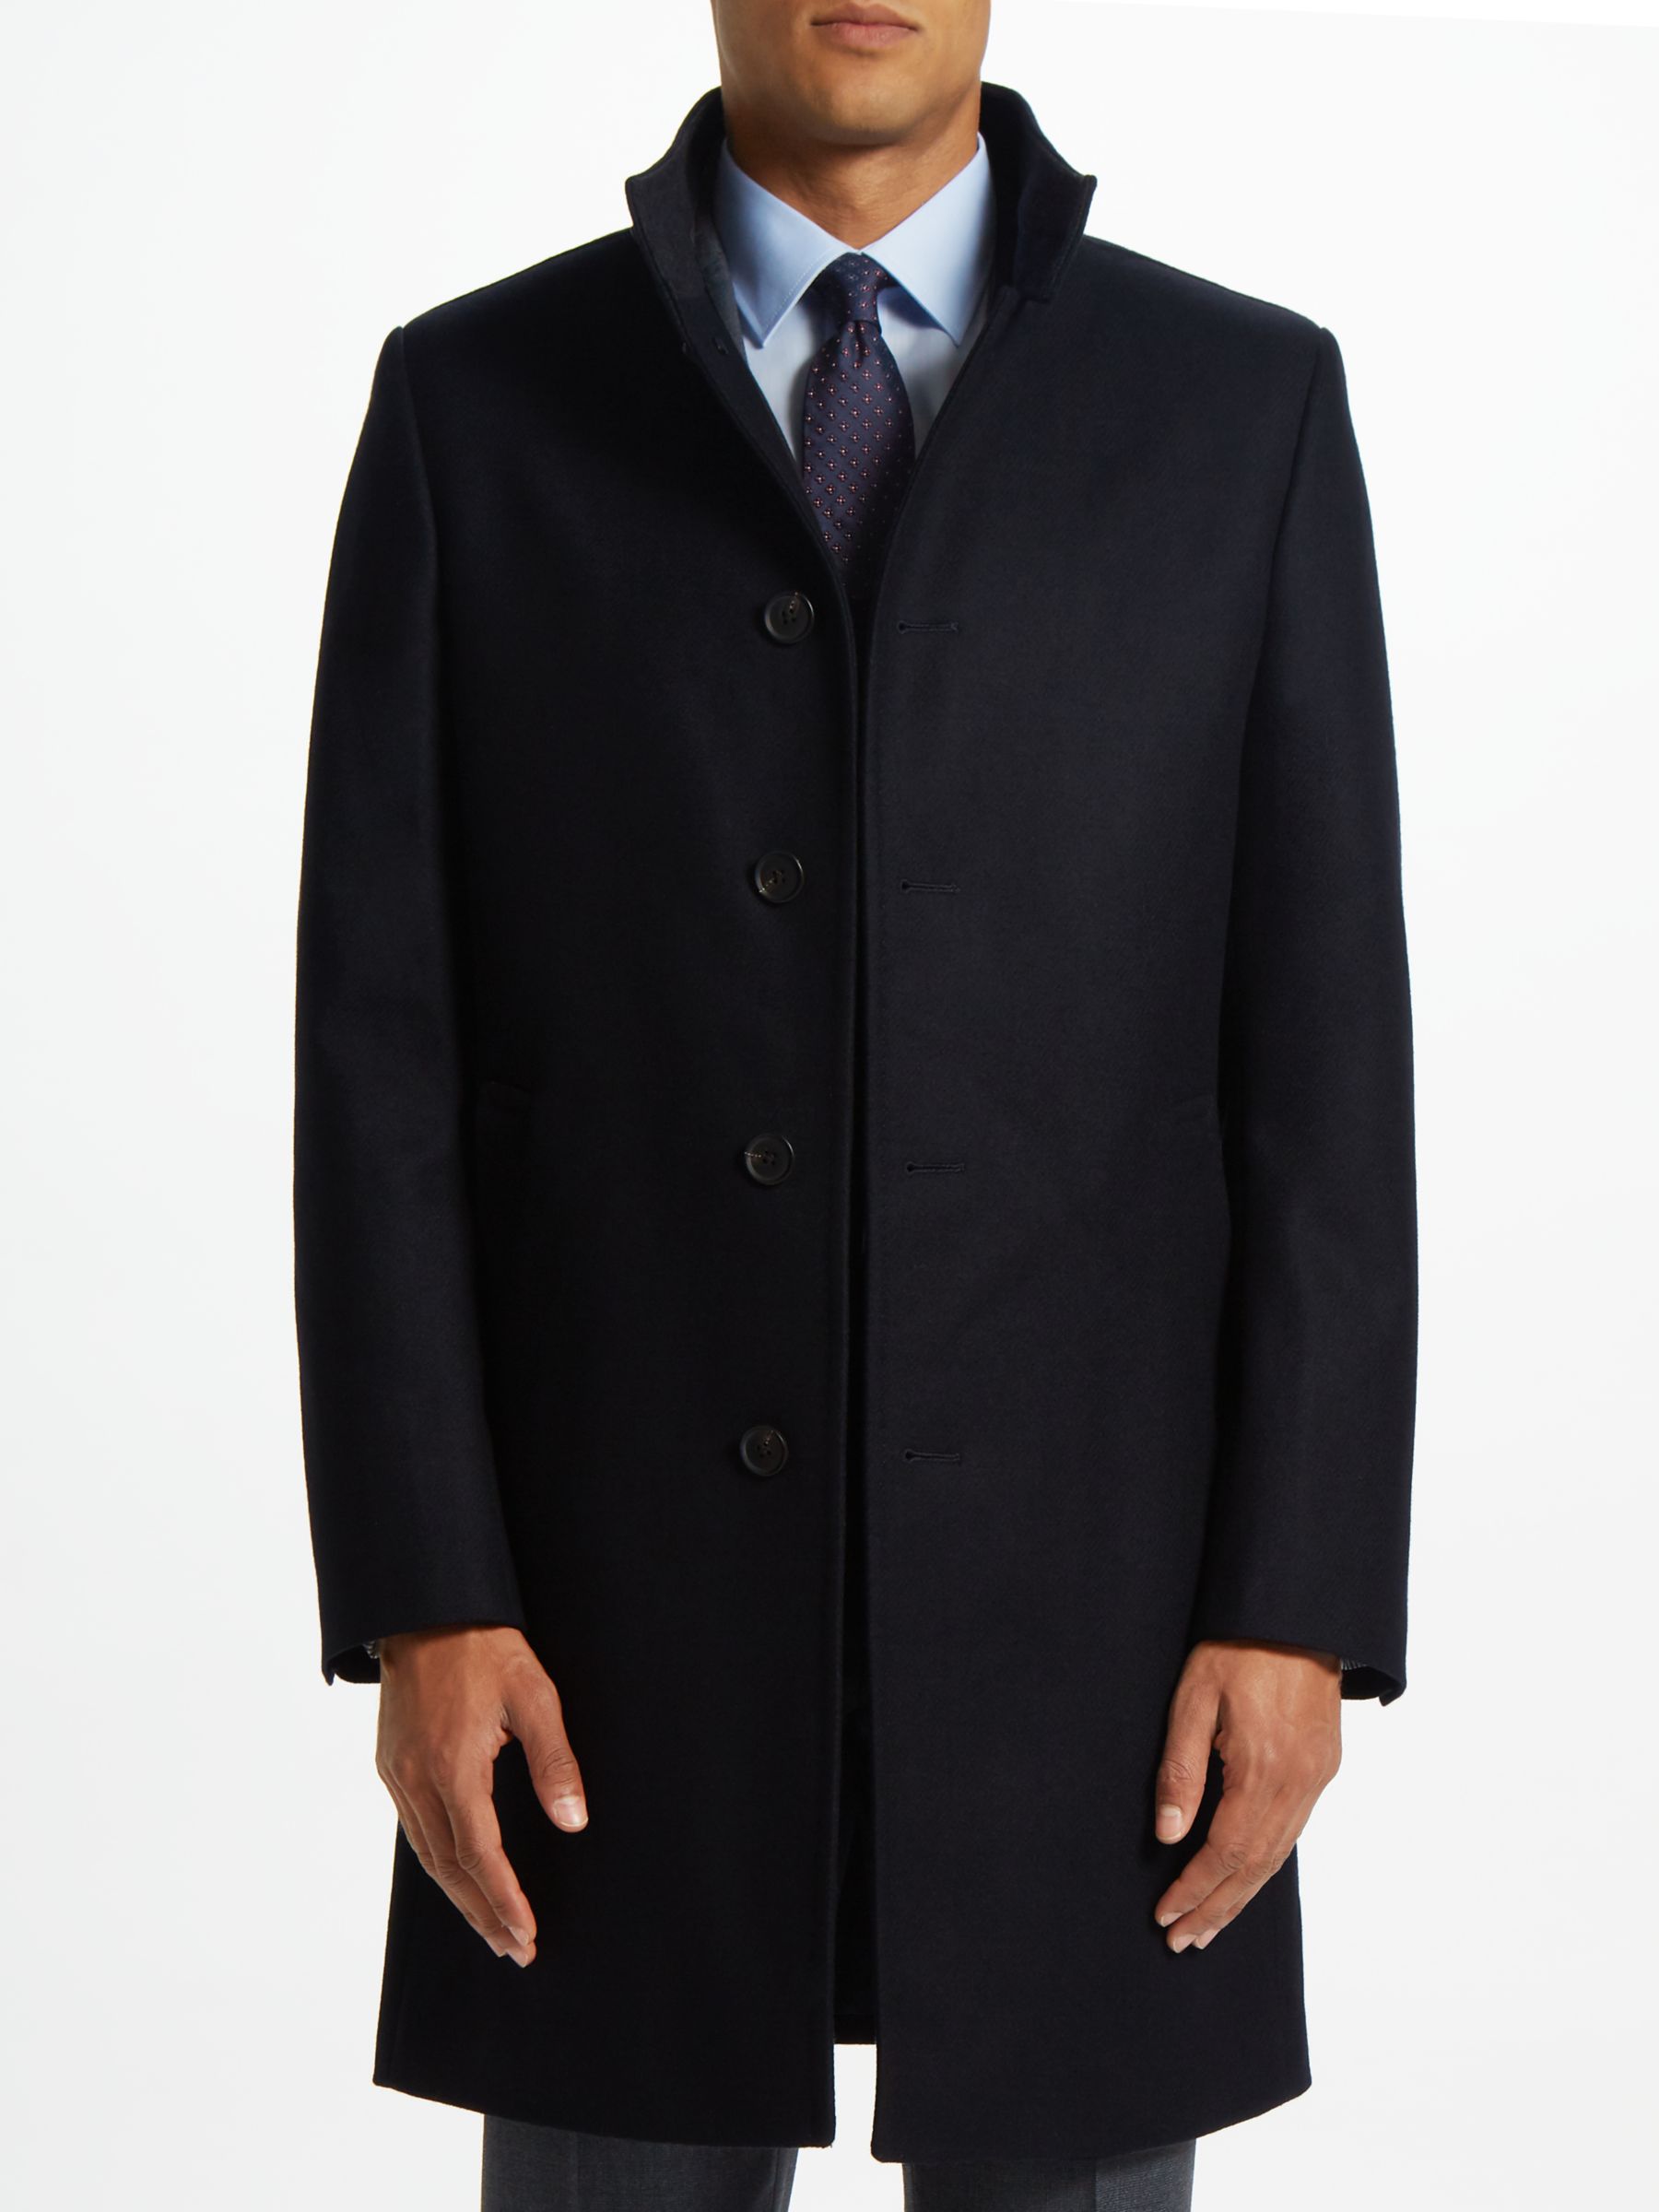 Overcoat | Men's Coats & Jackets | John Lewis